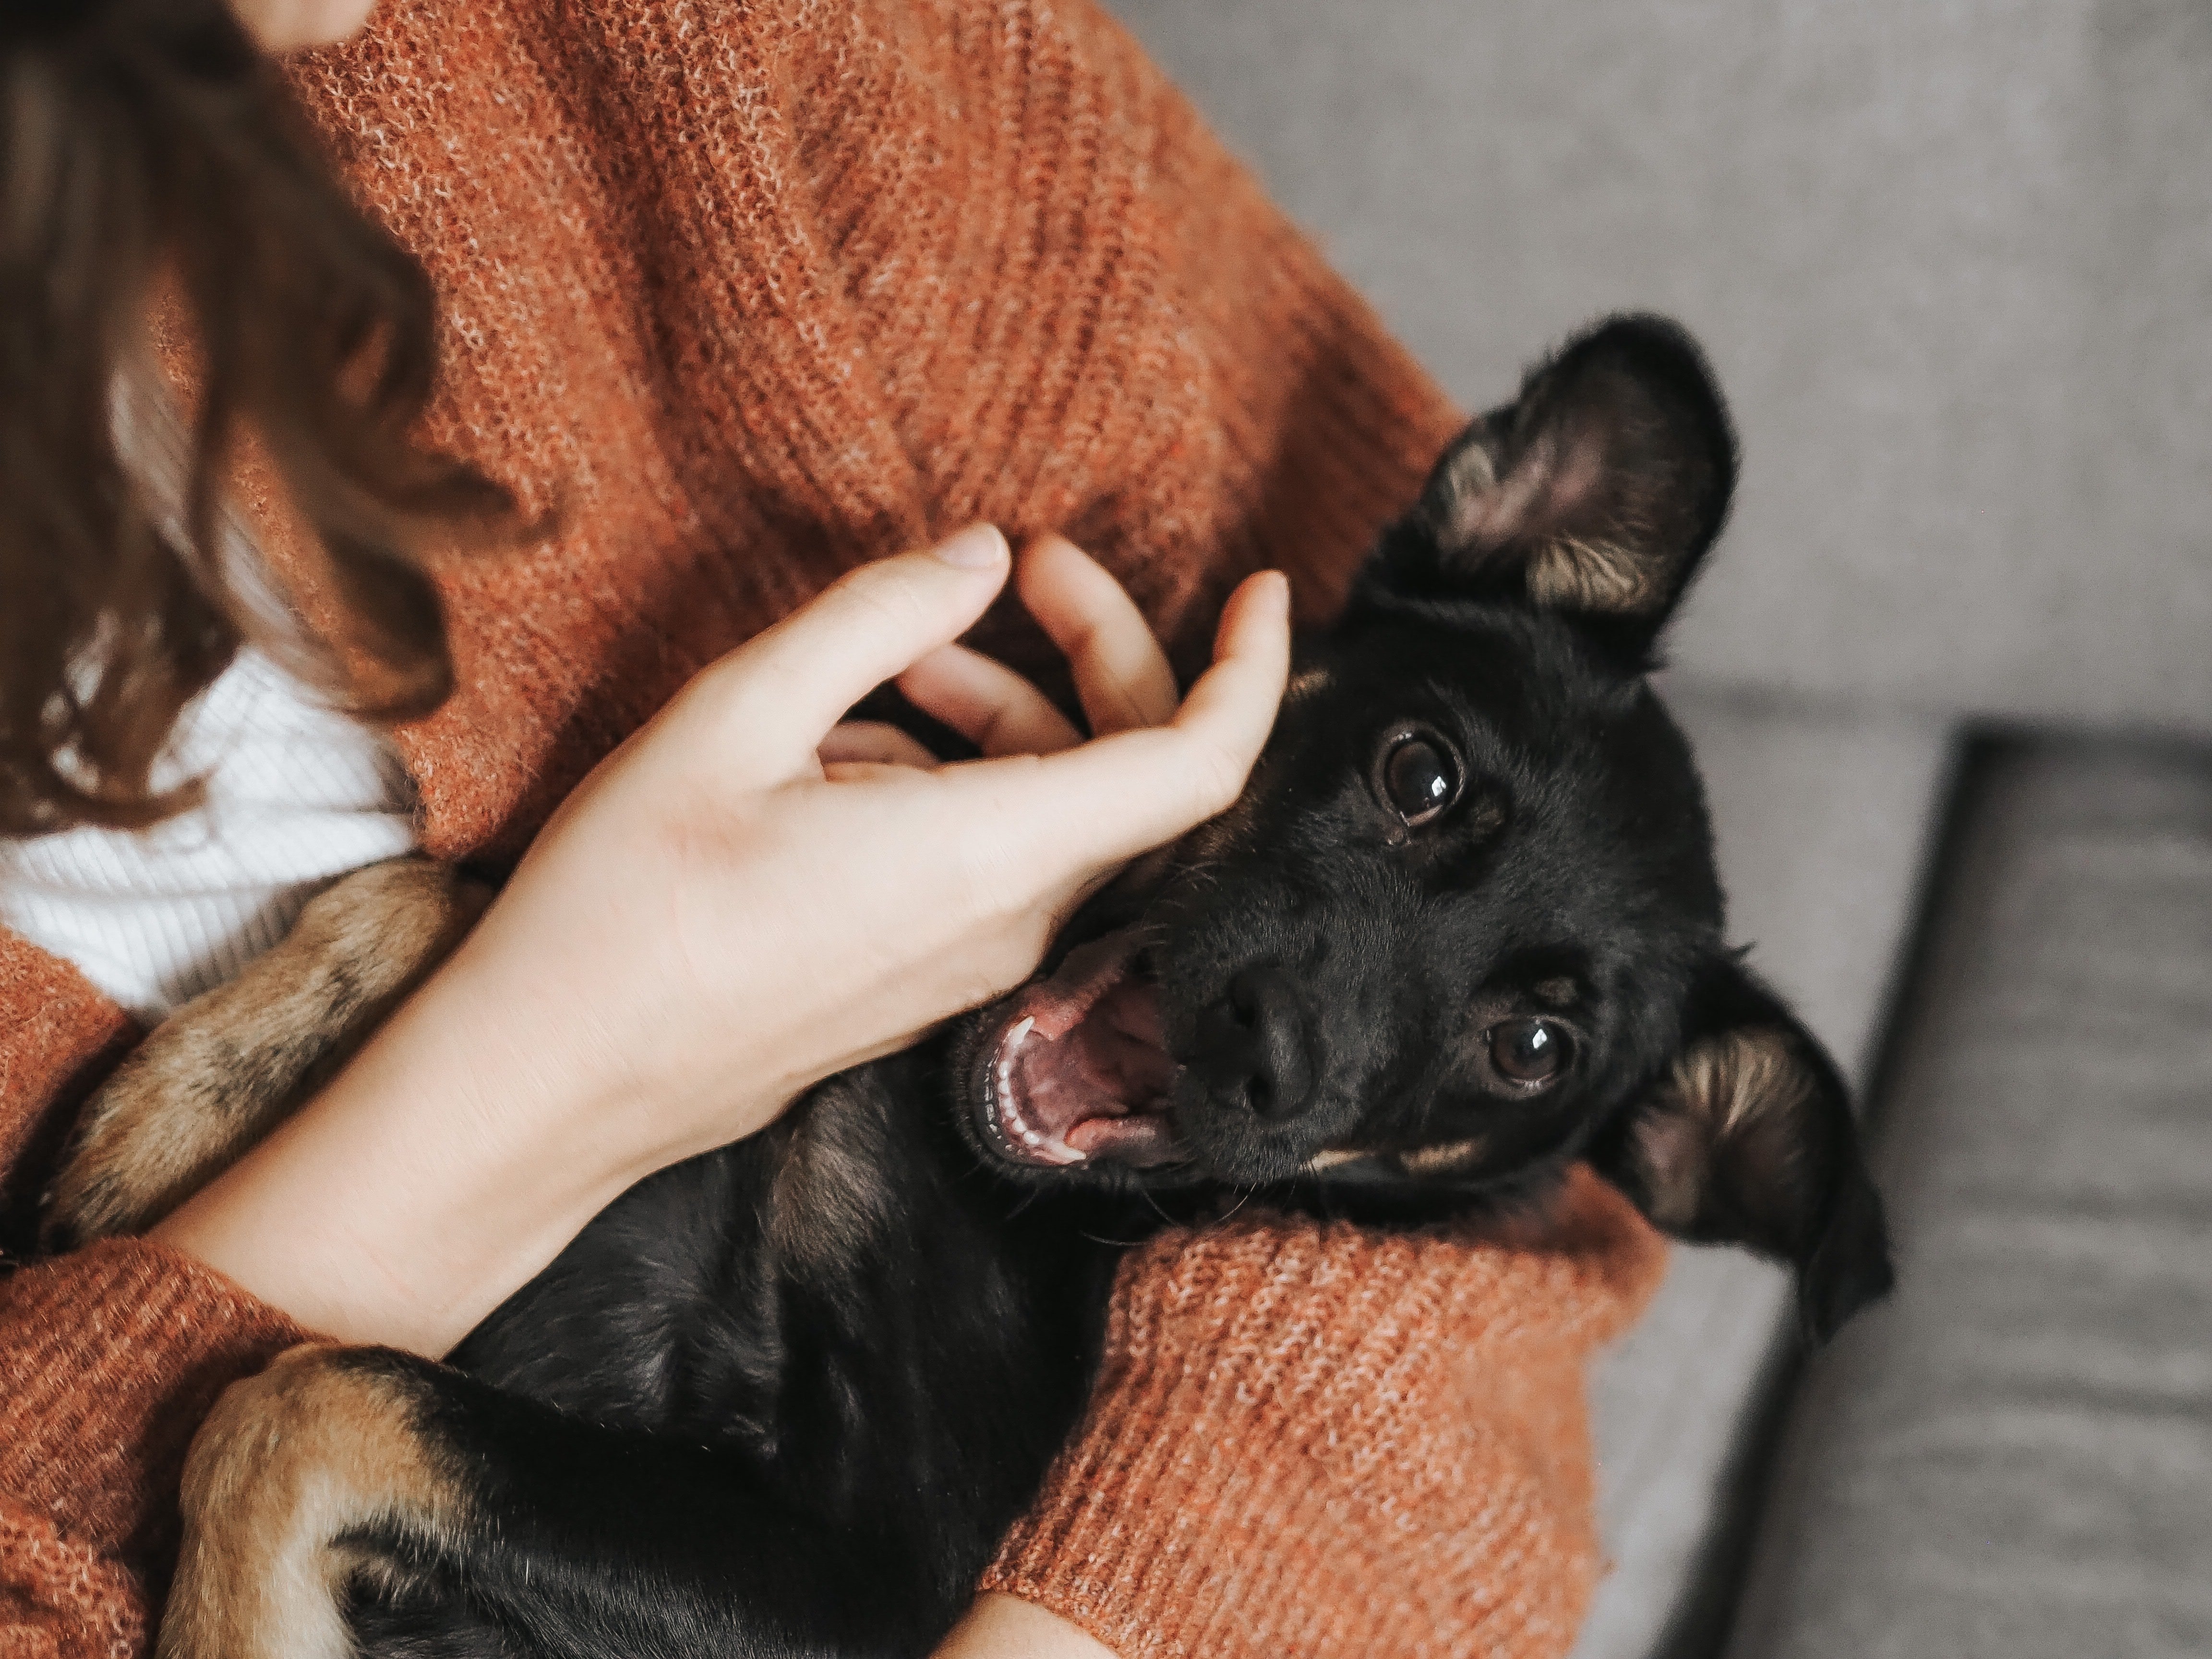 Tener una mascota mejora nuestro bienestar emocional